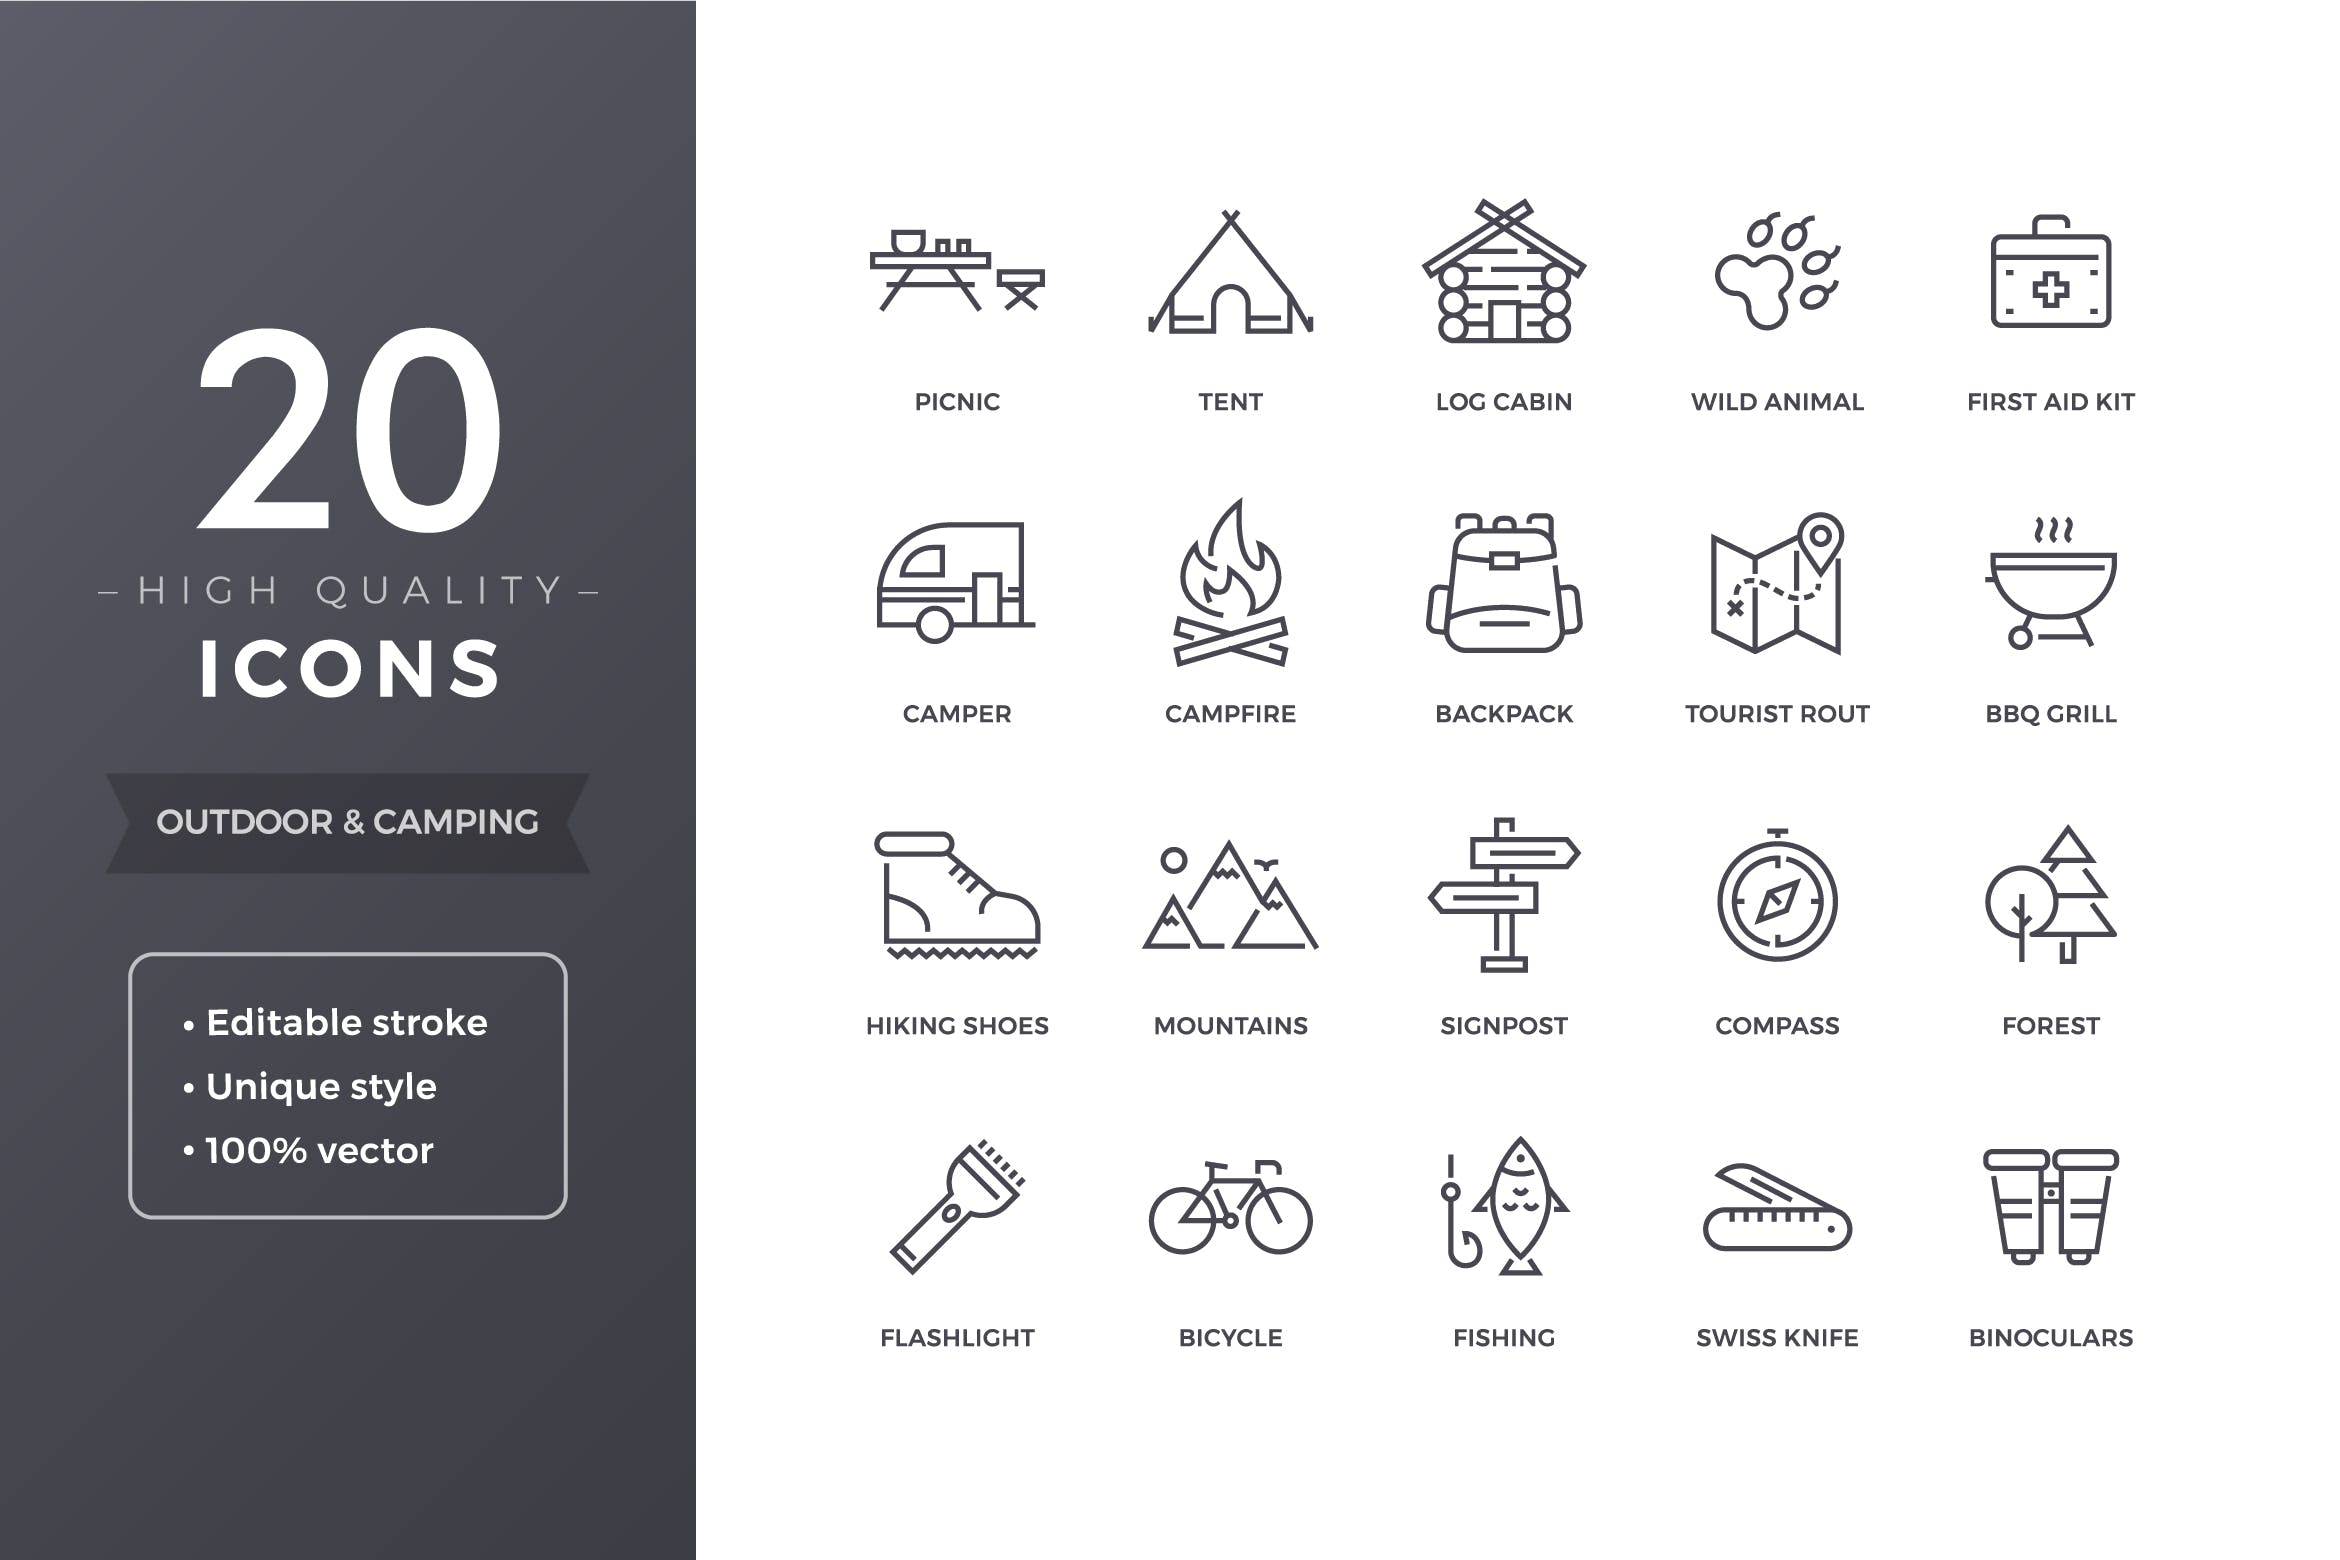 20个精致户外露营系列图标源文件下载Camping Icons